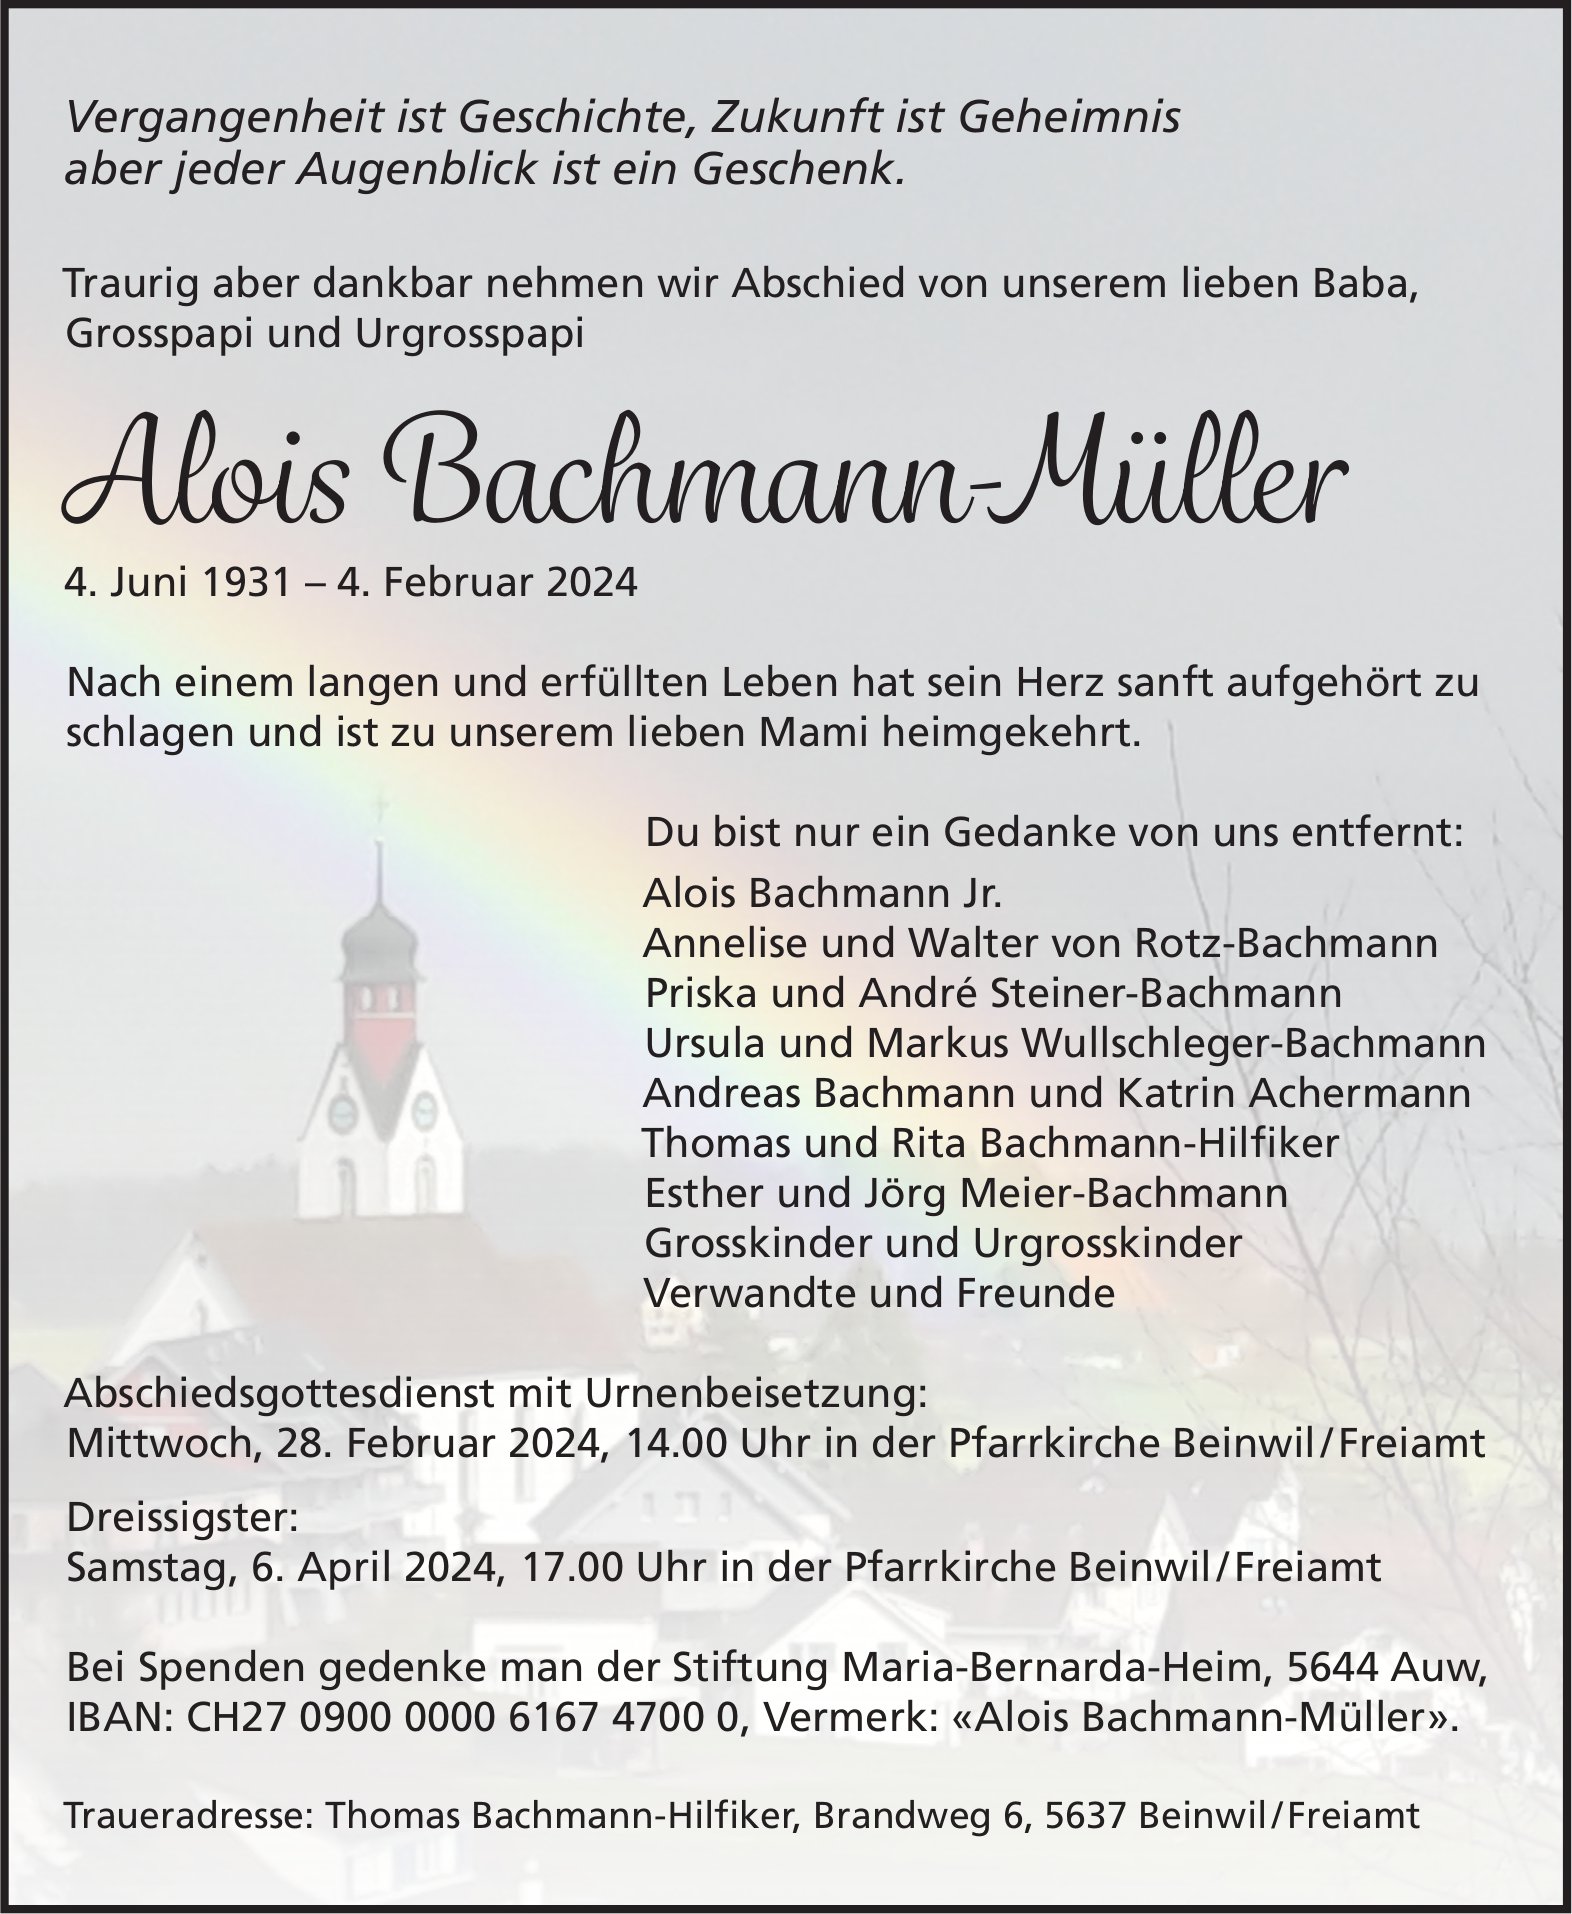 Bachmann-Müller Alois, Februar 2024 / TA